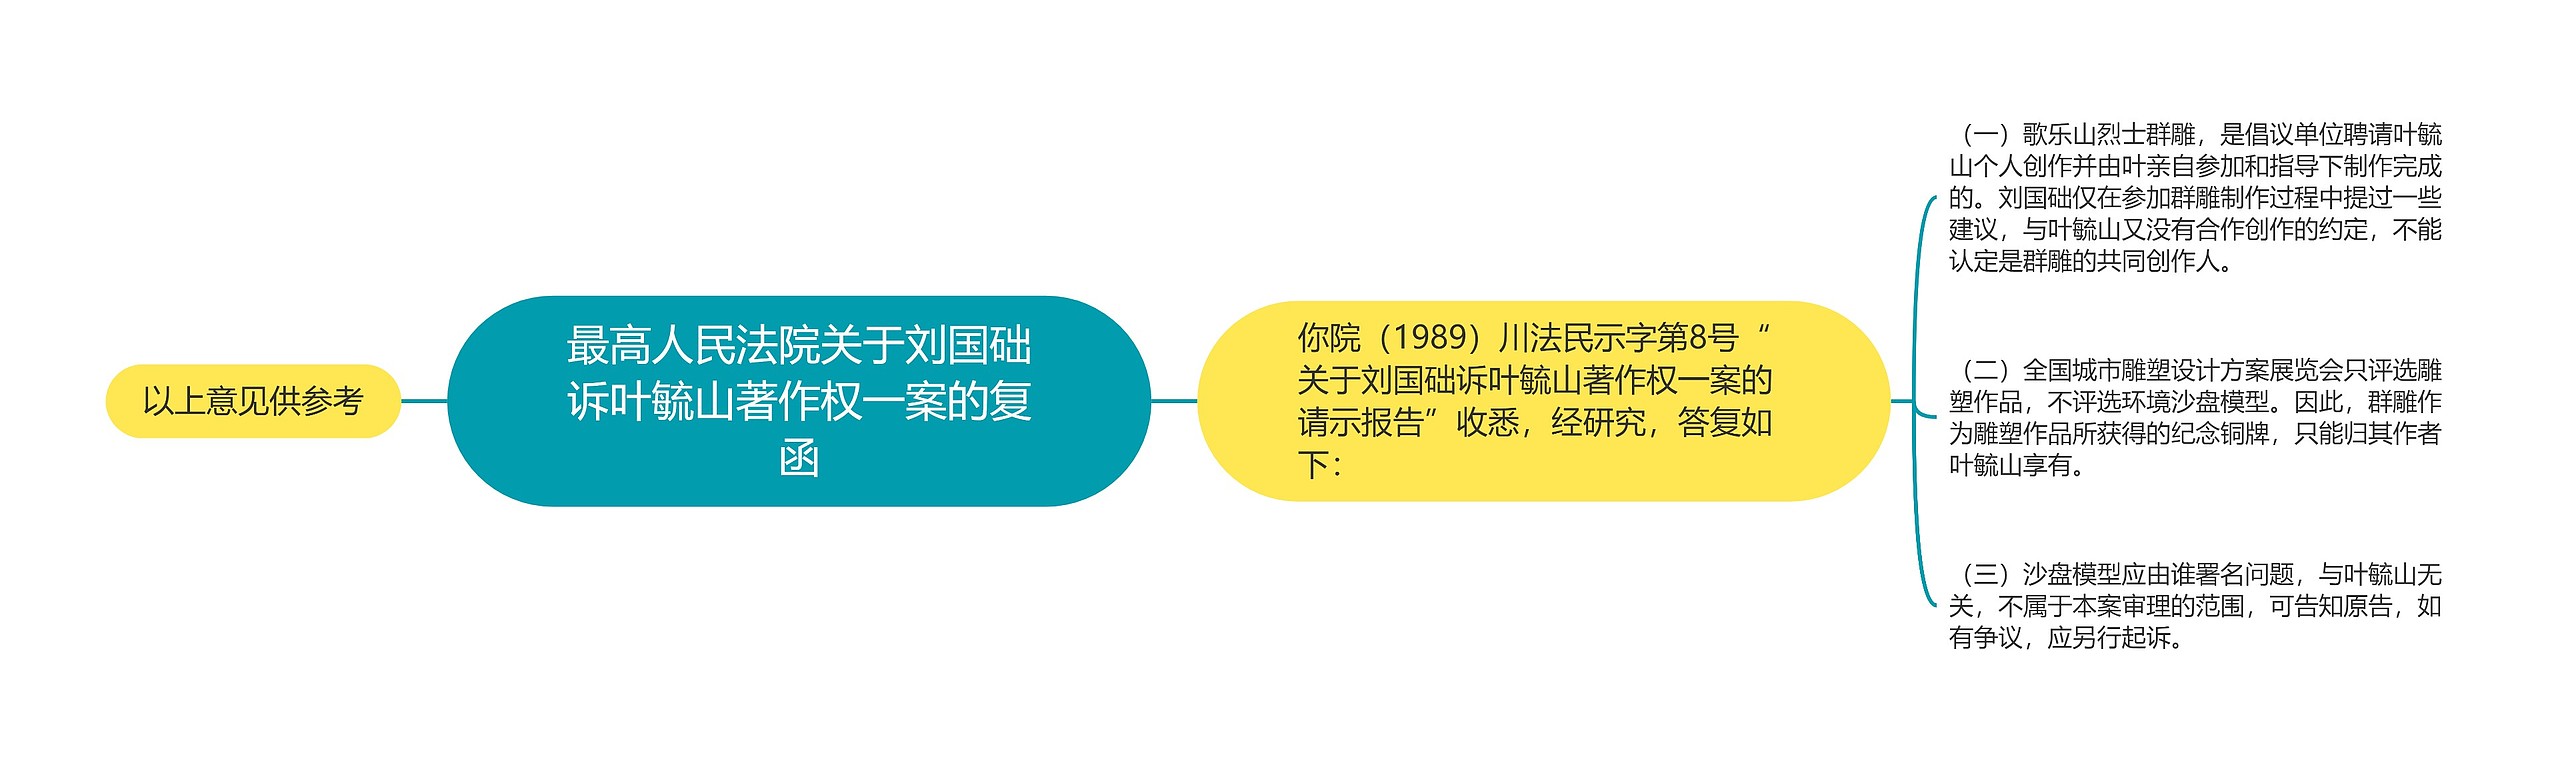 最高人民法院关于刘国础诉叶毓山著作权一案的复函